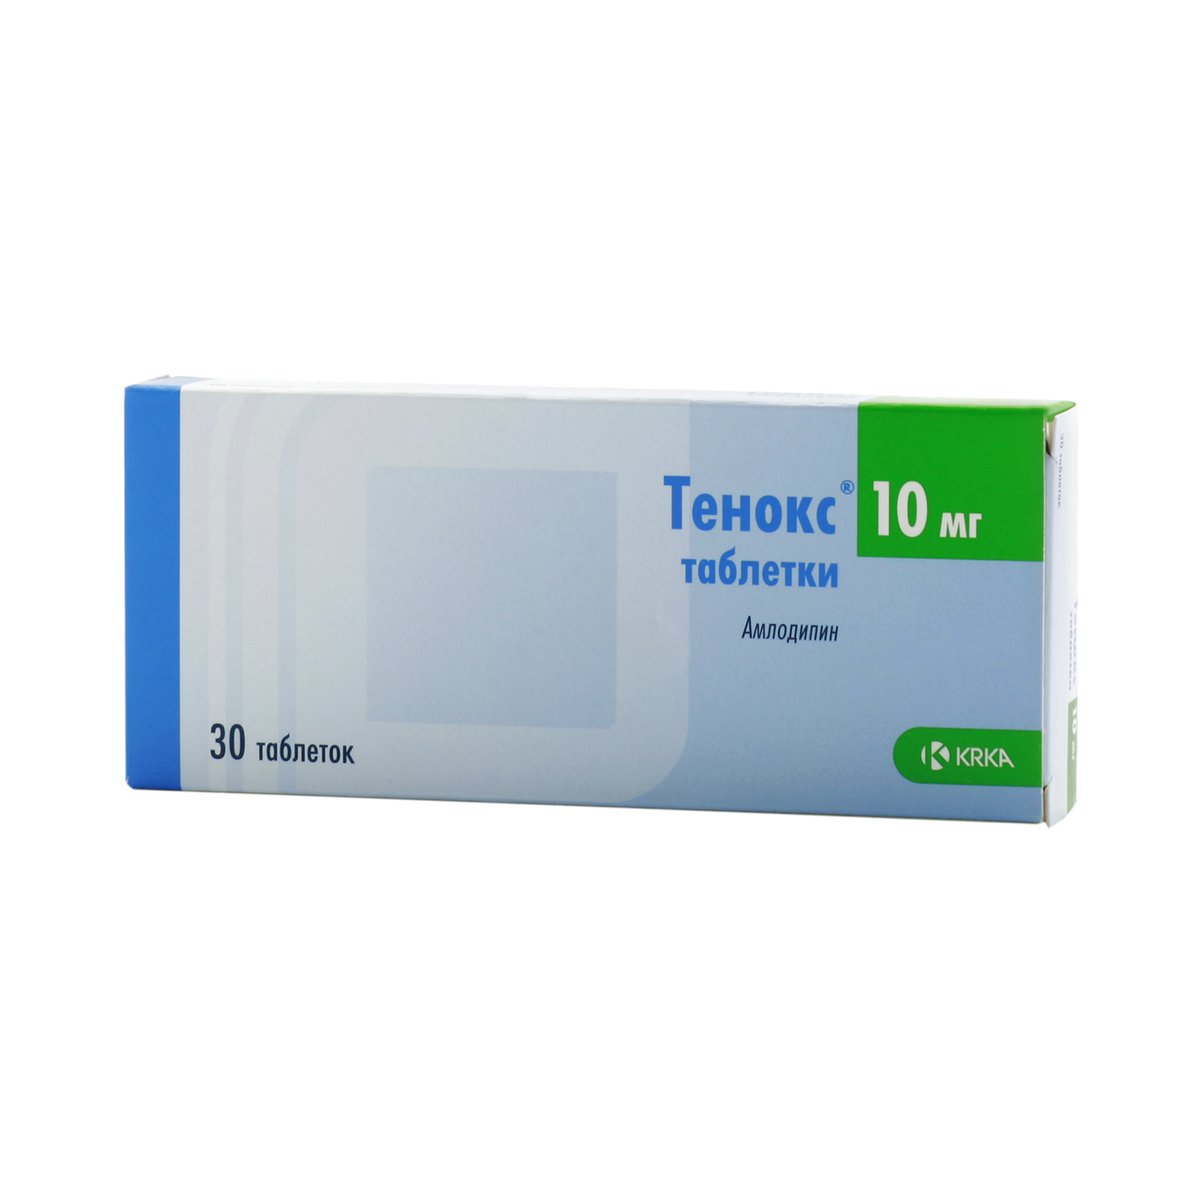 Тенокс (таблетки, 30 шт, 10 мг) - цена,  онлайн  .